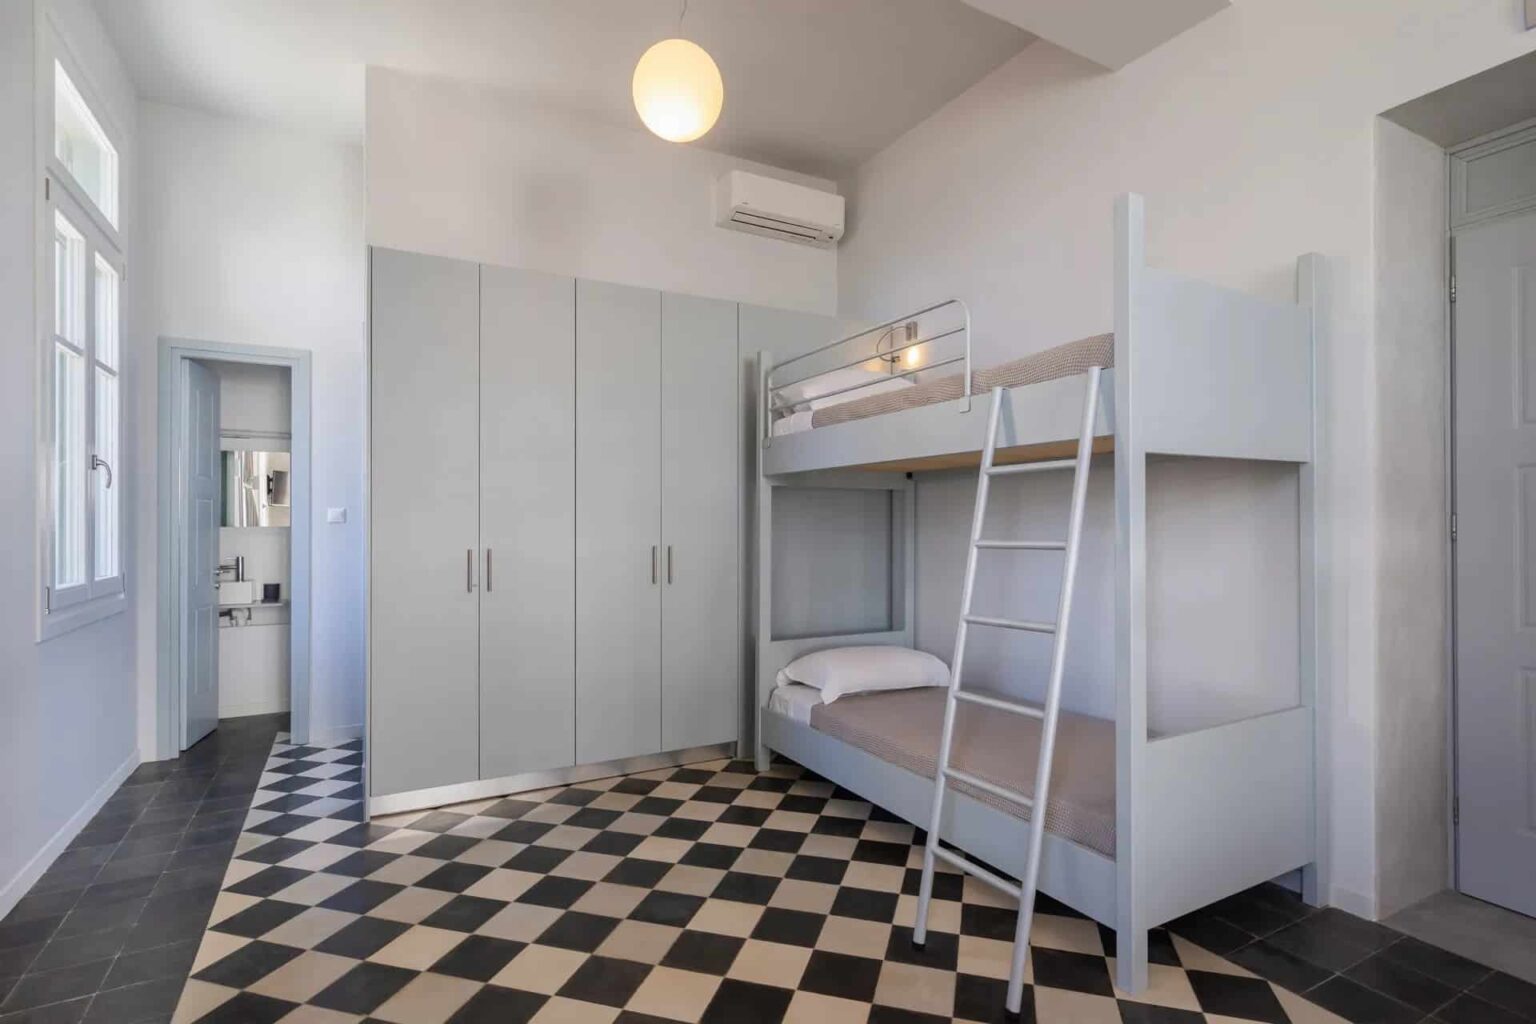 Dexamenes Beachfront Villa bedroom with double bunk beds